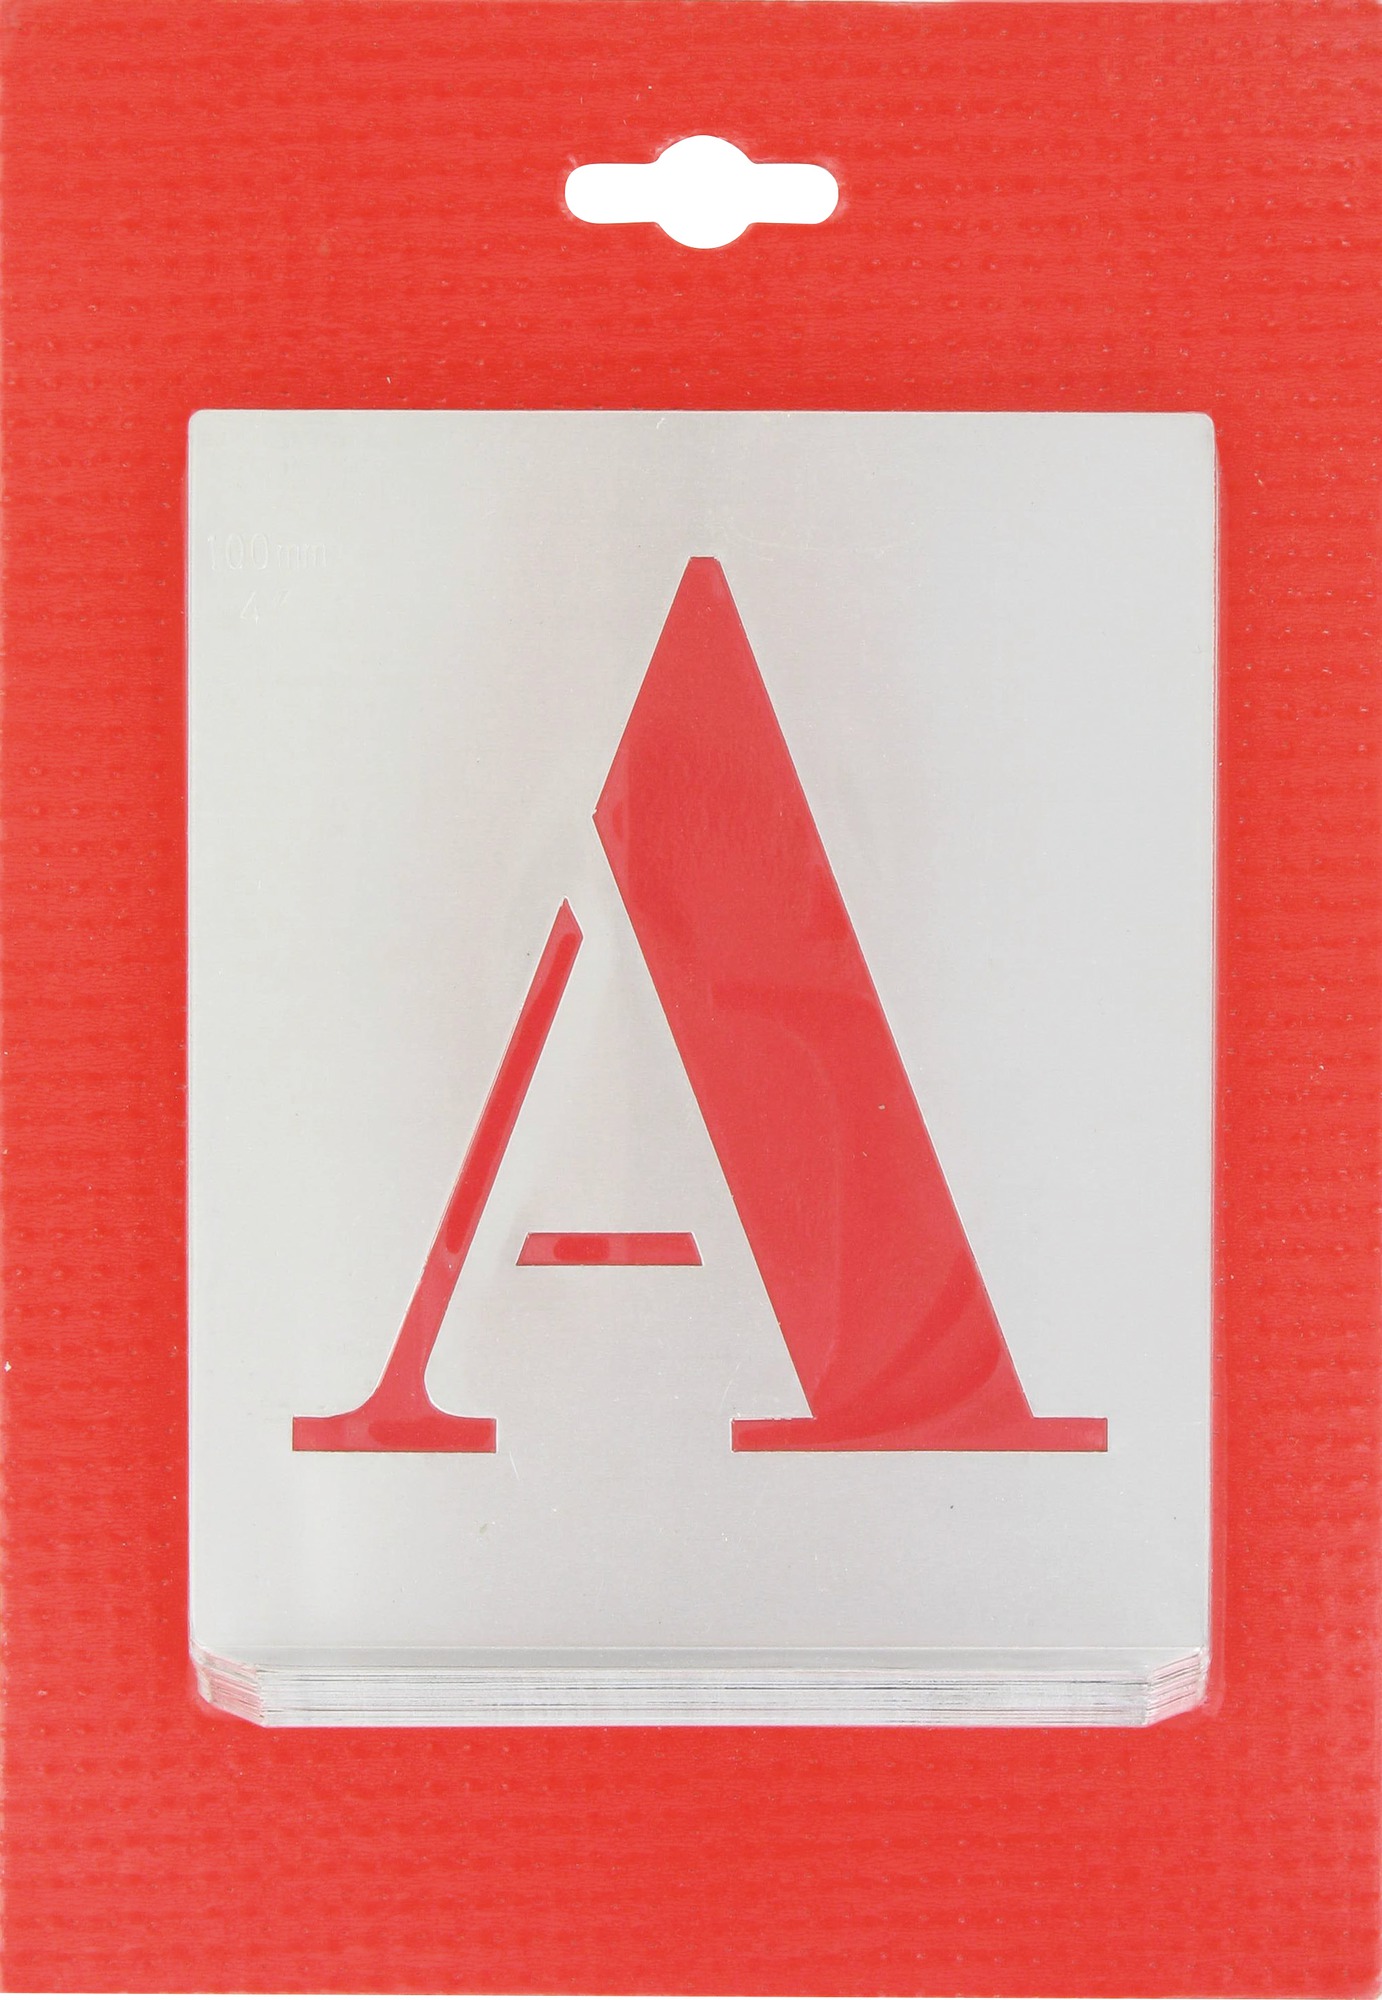 Jeu de lettres pochoirs alphabet aluminium ajouré Uny - Dimensions 100 mm